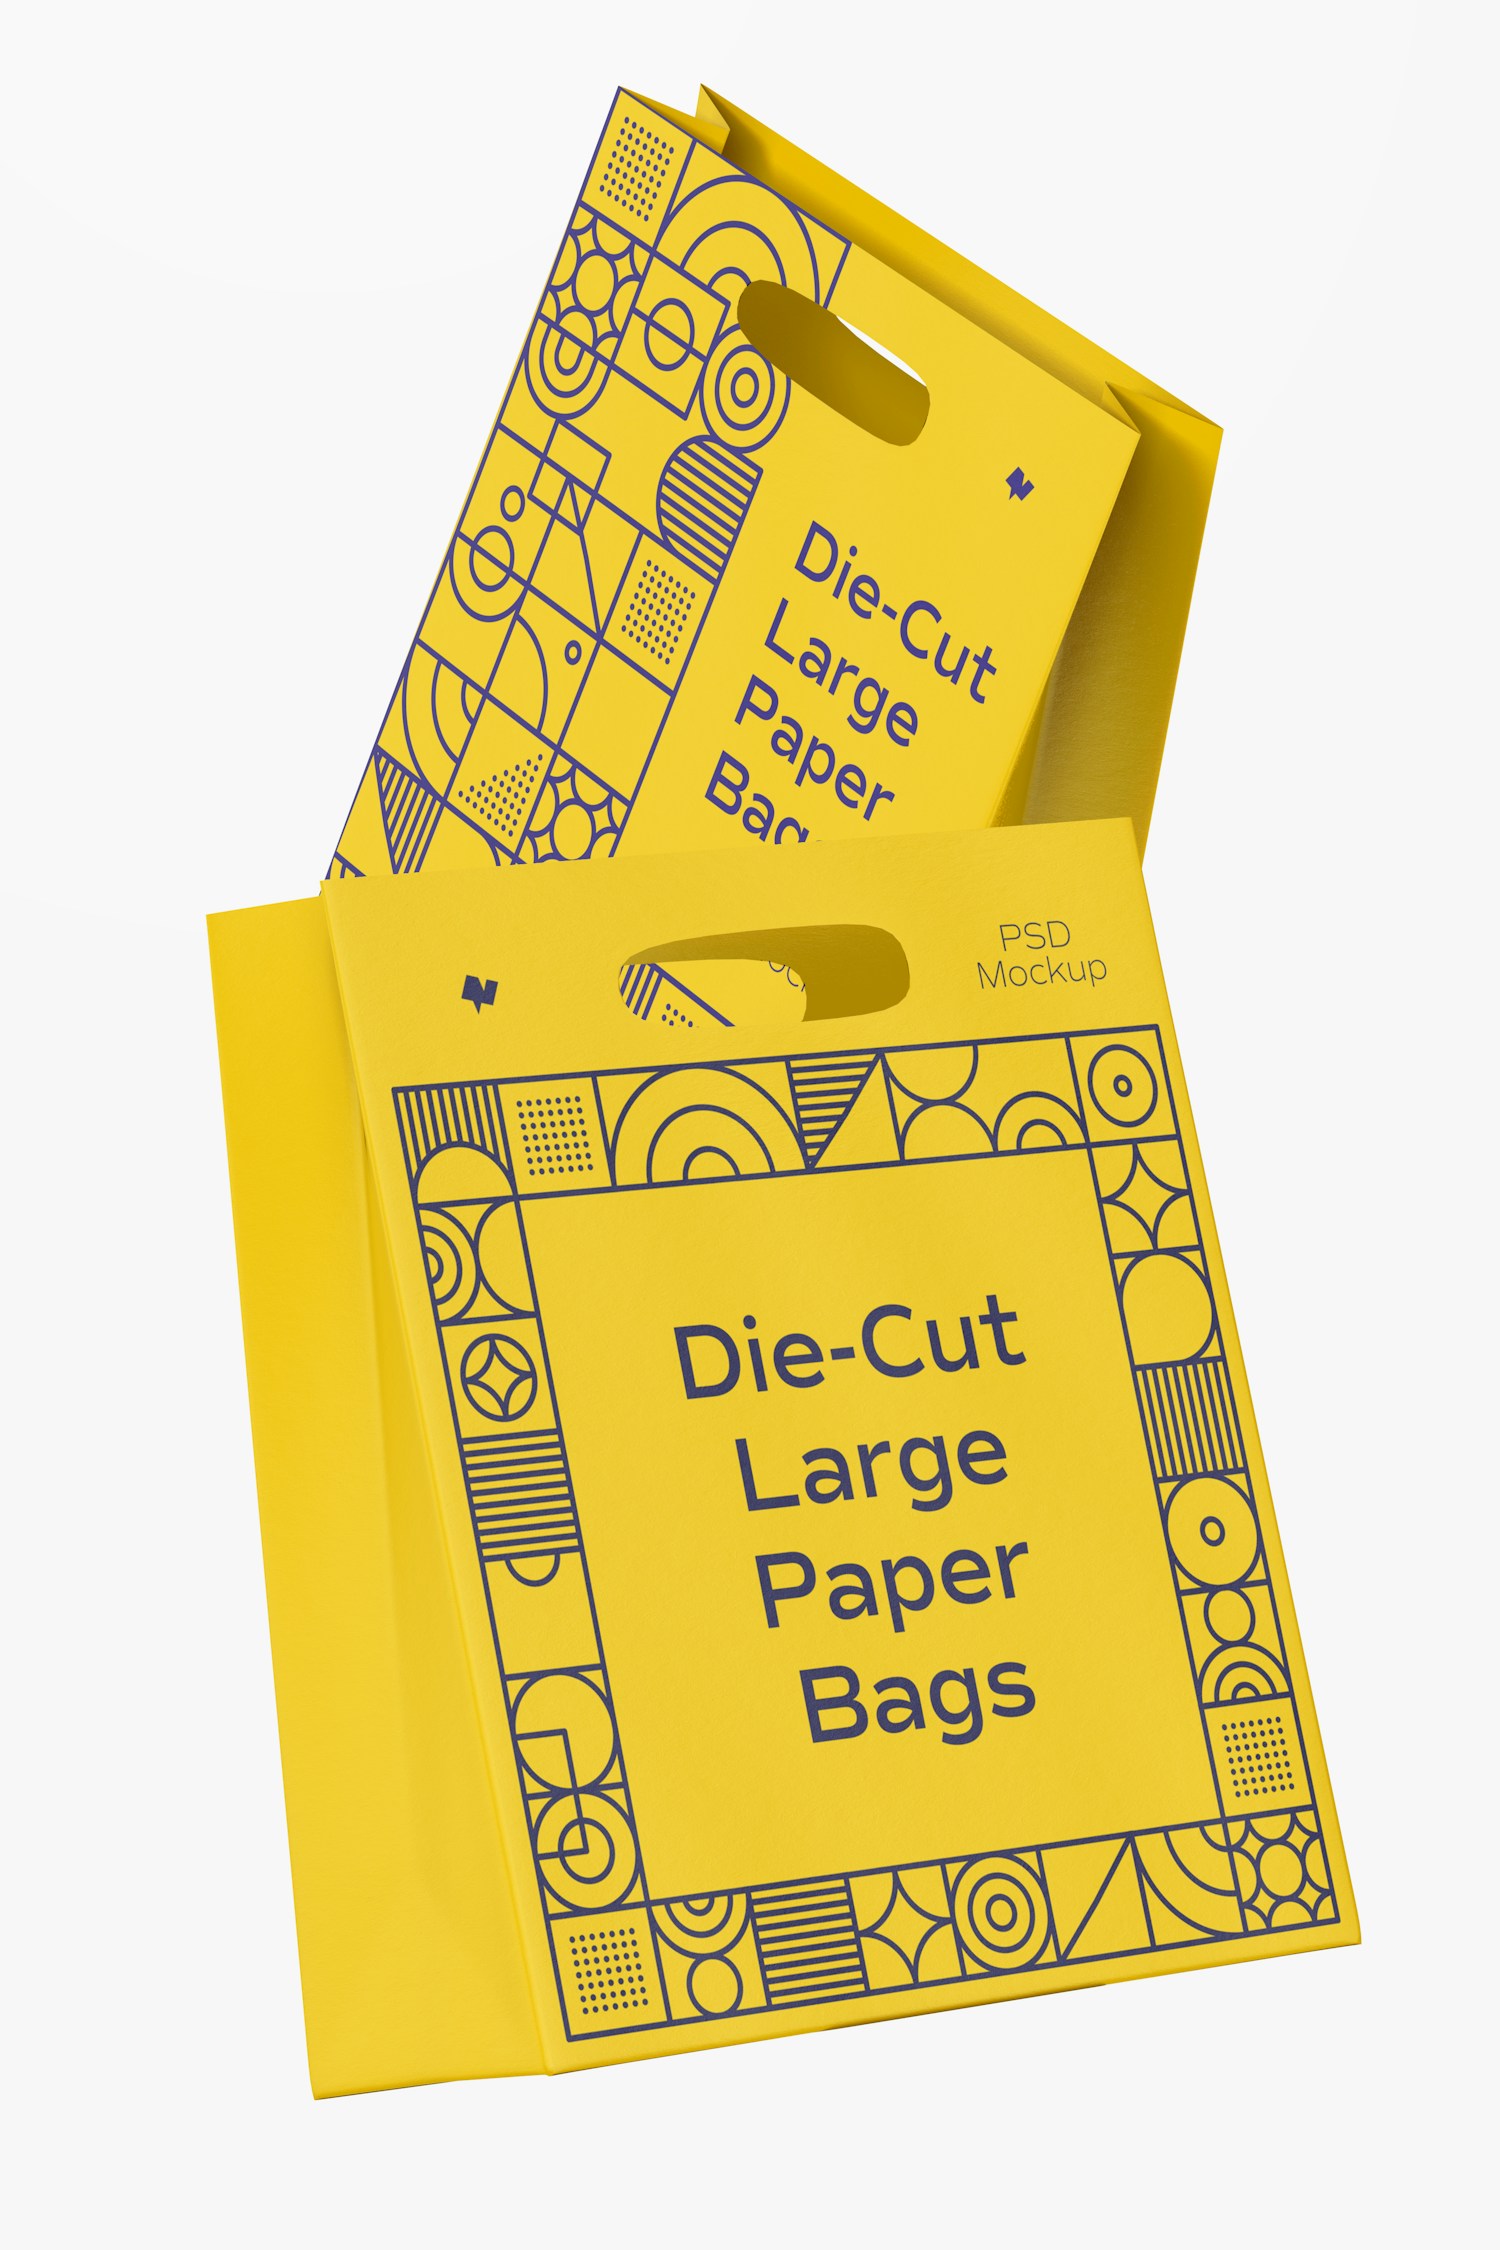 Die-Cut Large Paper Bags Mockup, Floating